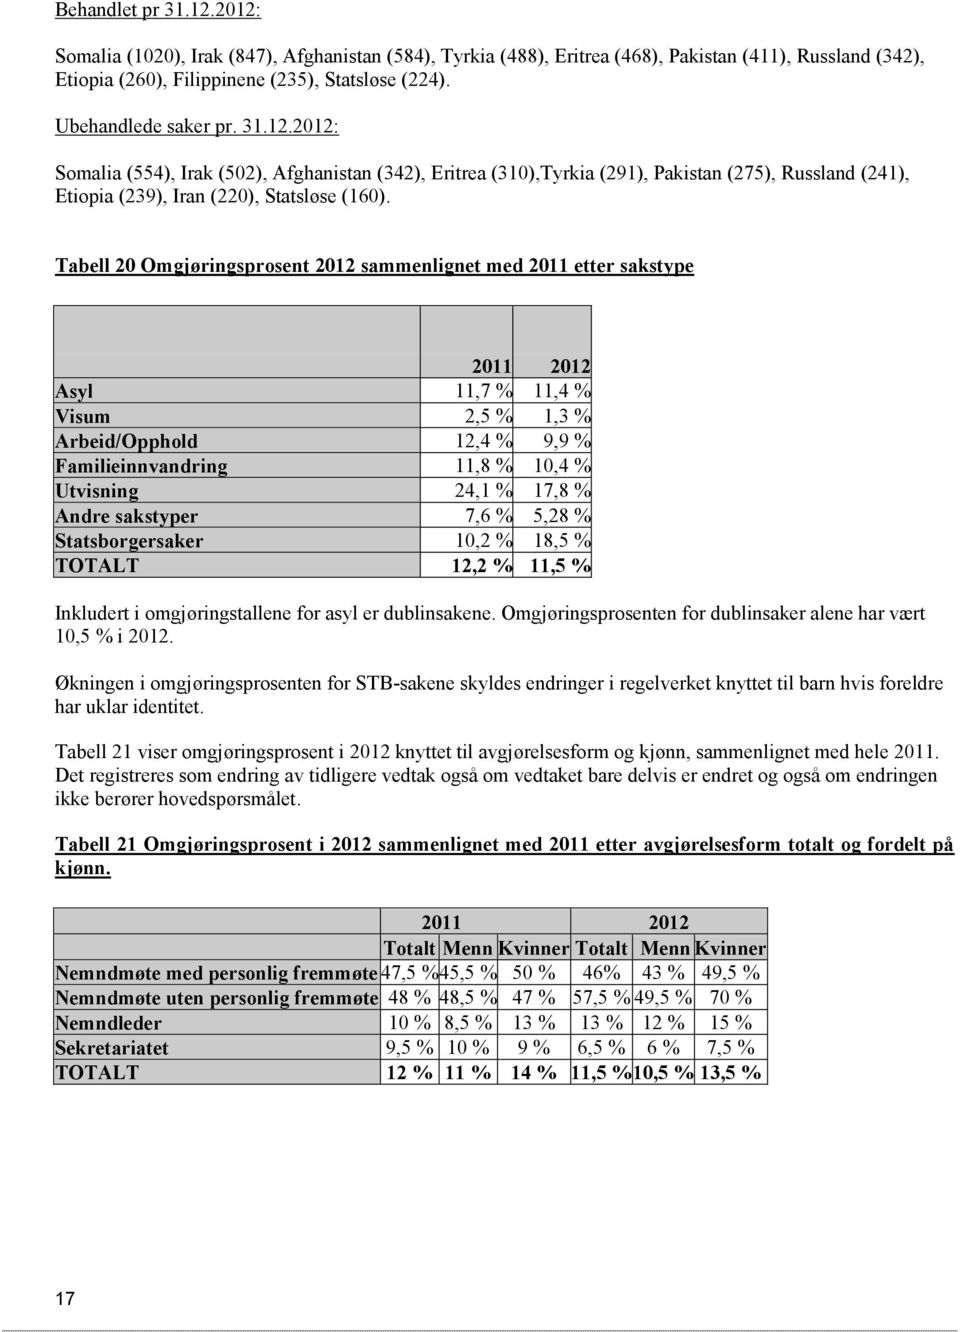 Tabell 20 Omgjøringsprosent 2012 sammenlignet med 2011 etter sakstype 2011 2012 Asyl 11,7 % 11,4 % Visum 2,5 % 1,3 % Arbeid/Opphold 12,4 % 9,9 % Familieinnvandring 11,8 % 10,4 % Utvisning 24,1 % 17,8